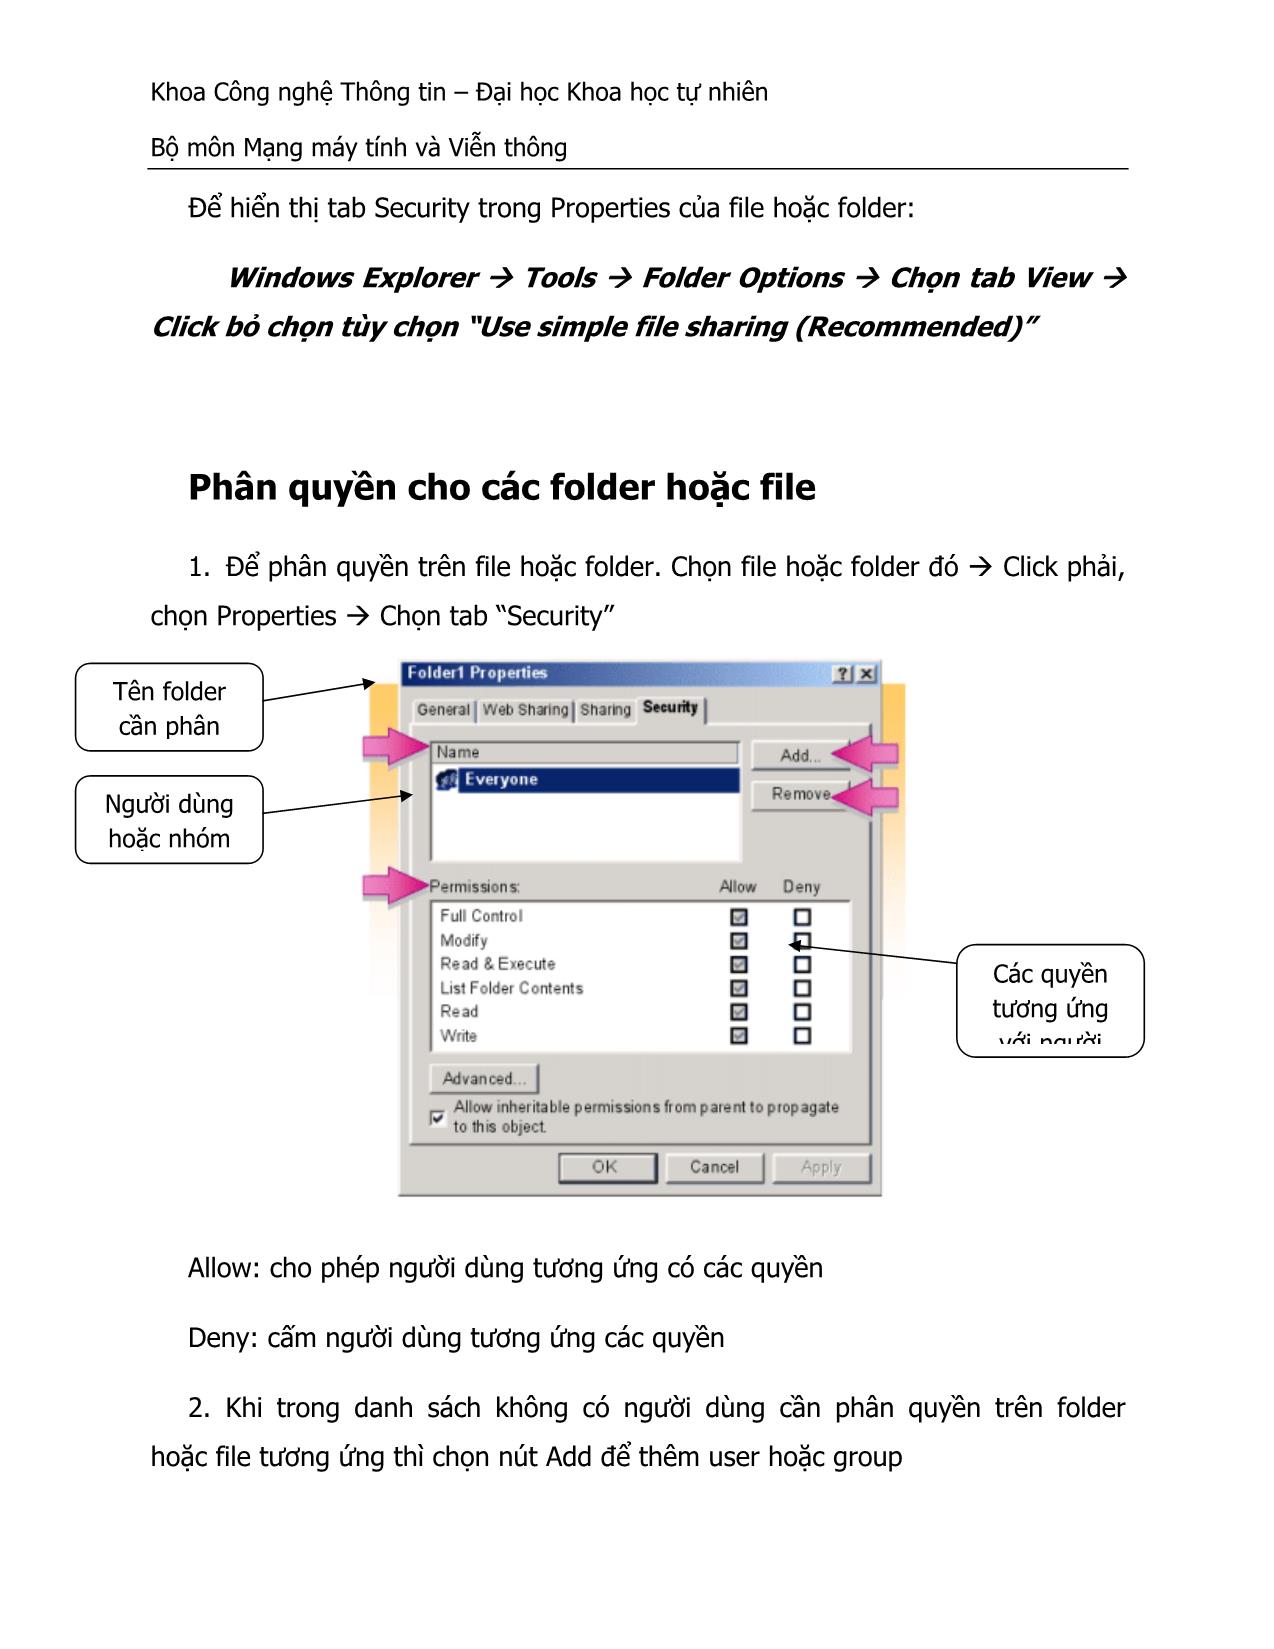 Thực hành Hệ điều hành - Quản lý truy cập tài nguyên đĩa cứng trang 3